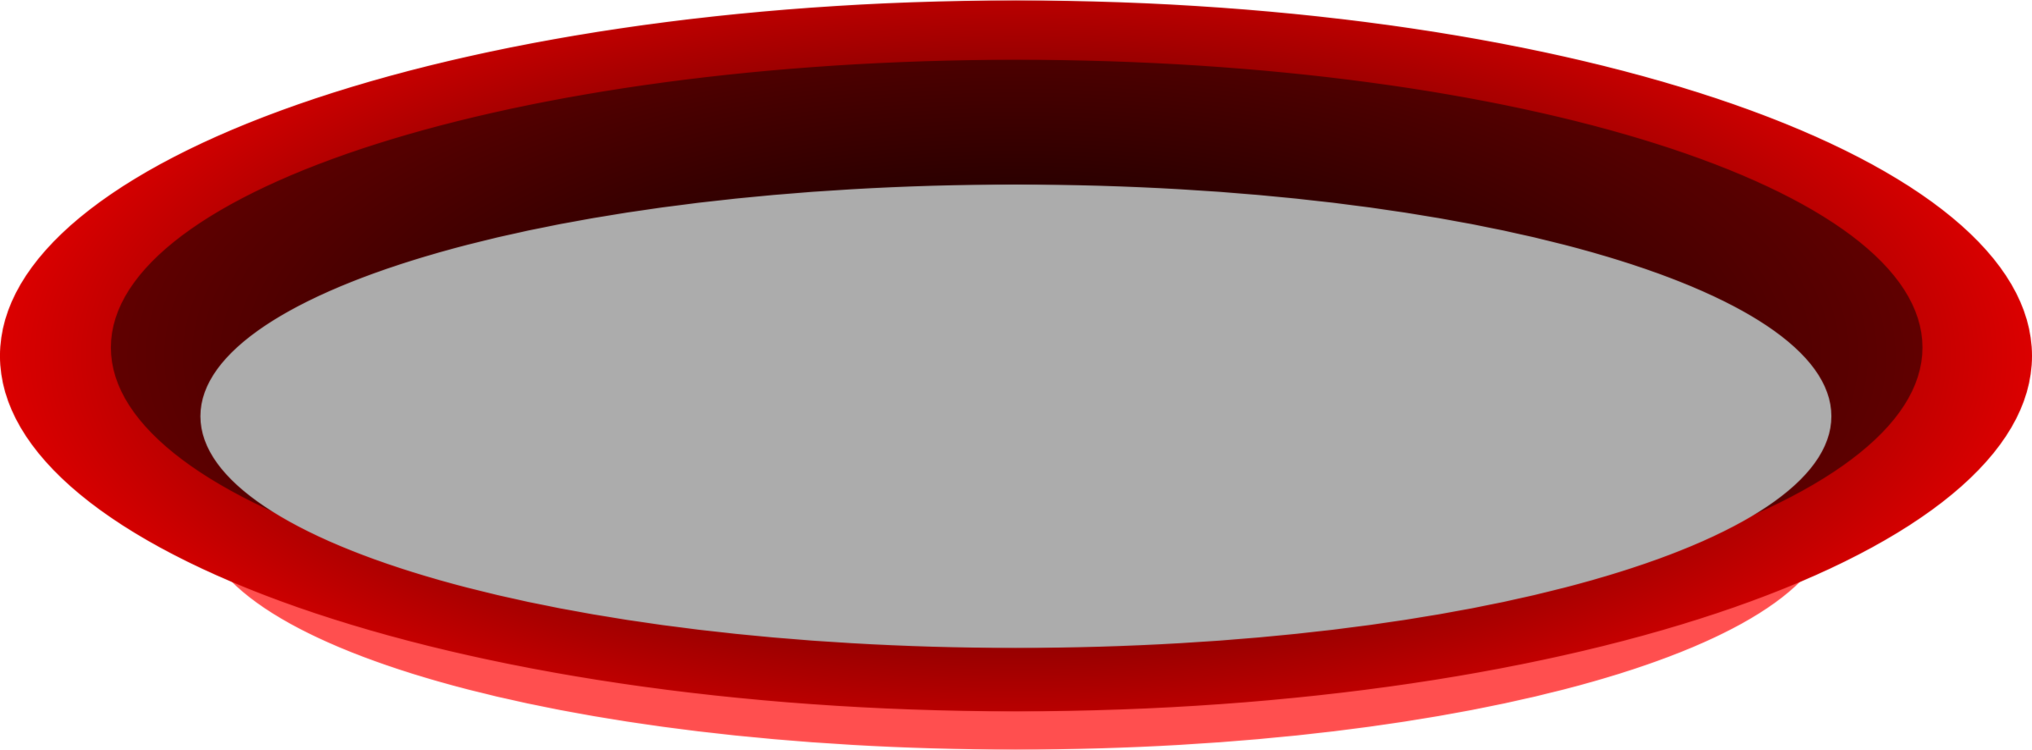 Angle,Oval,Circle